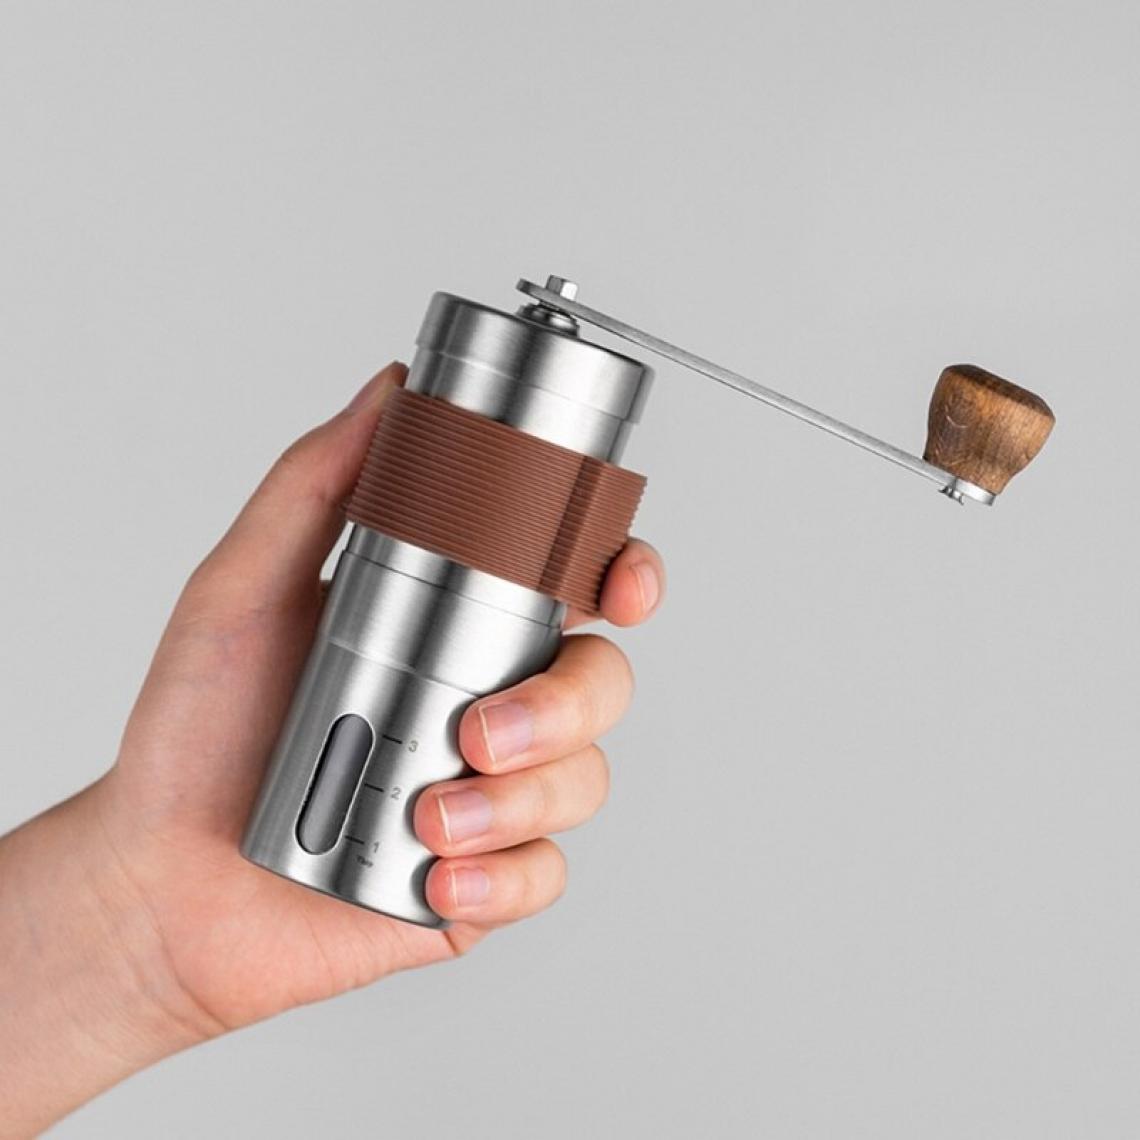 Universal - Broyeur à main portatif en acier inoxydable Broyeur à grains de café à manivelle conique Serrage de bureau à domicile(Argent) - Moulin à café